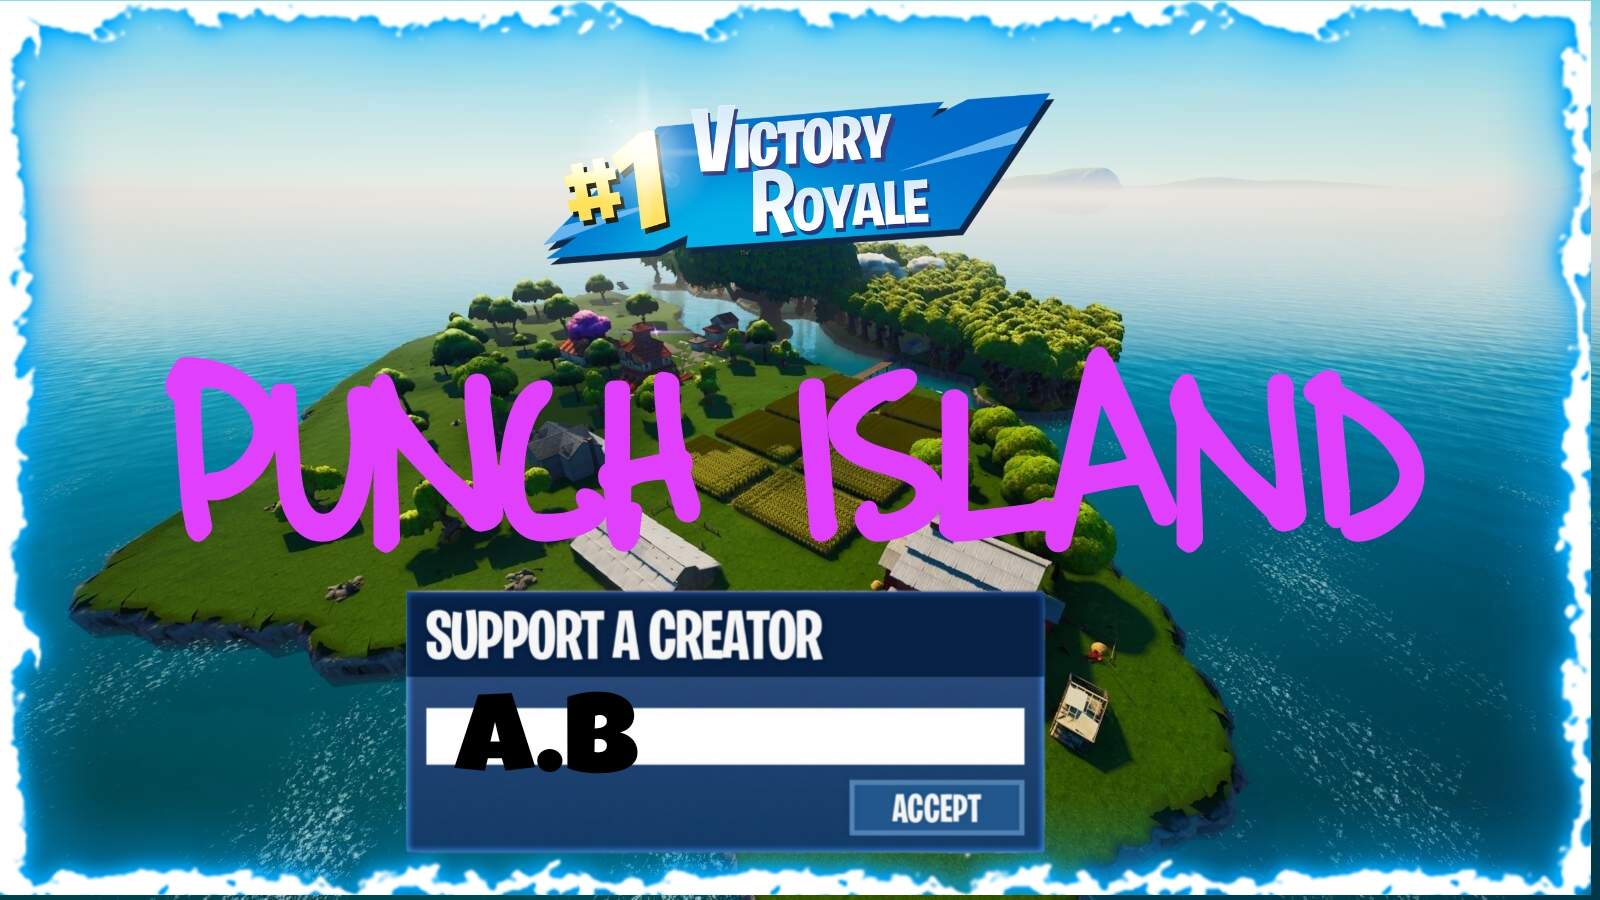 Punch Island Battle Royale image 2